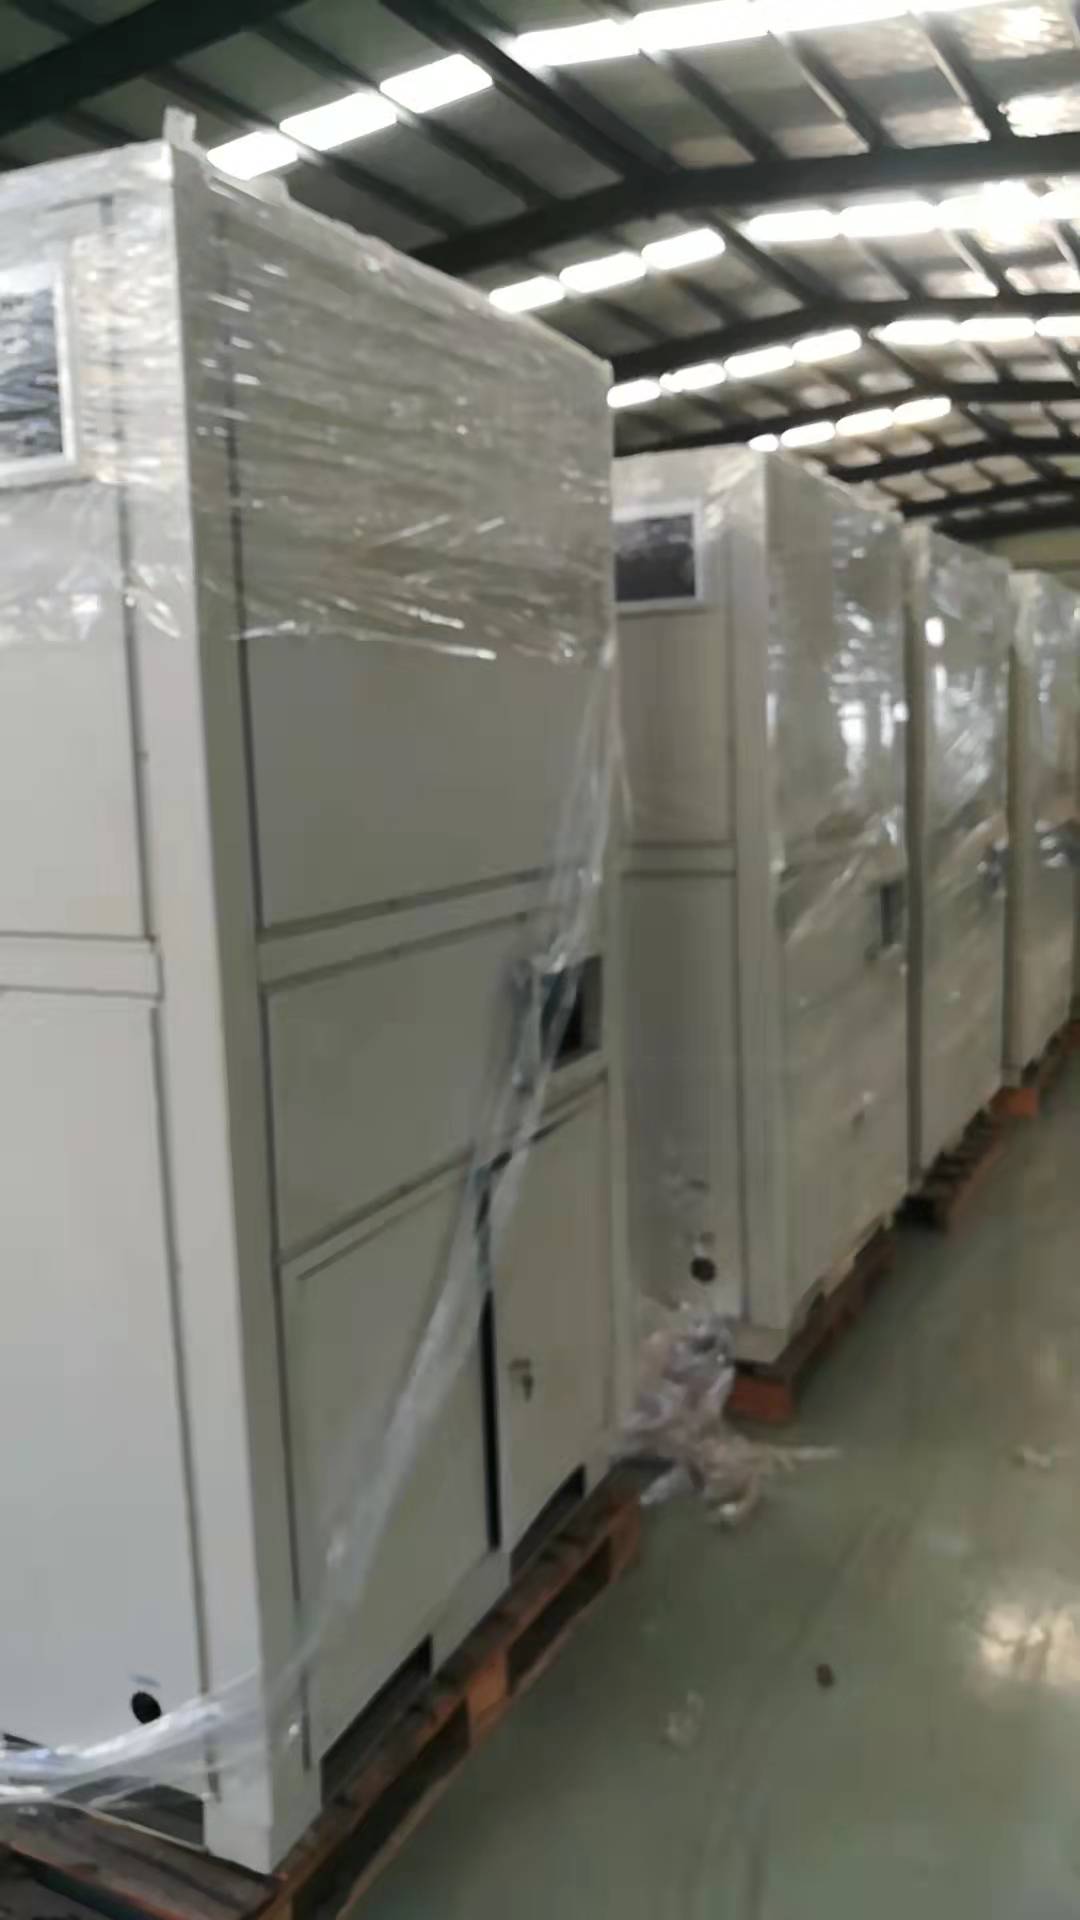 印刷空气能热泵专用烘干设备减风增浓解决凹印烘箱烘干存在问题.jpg